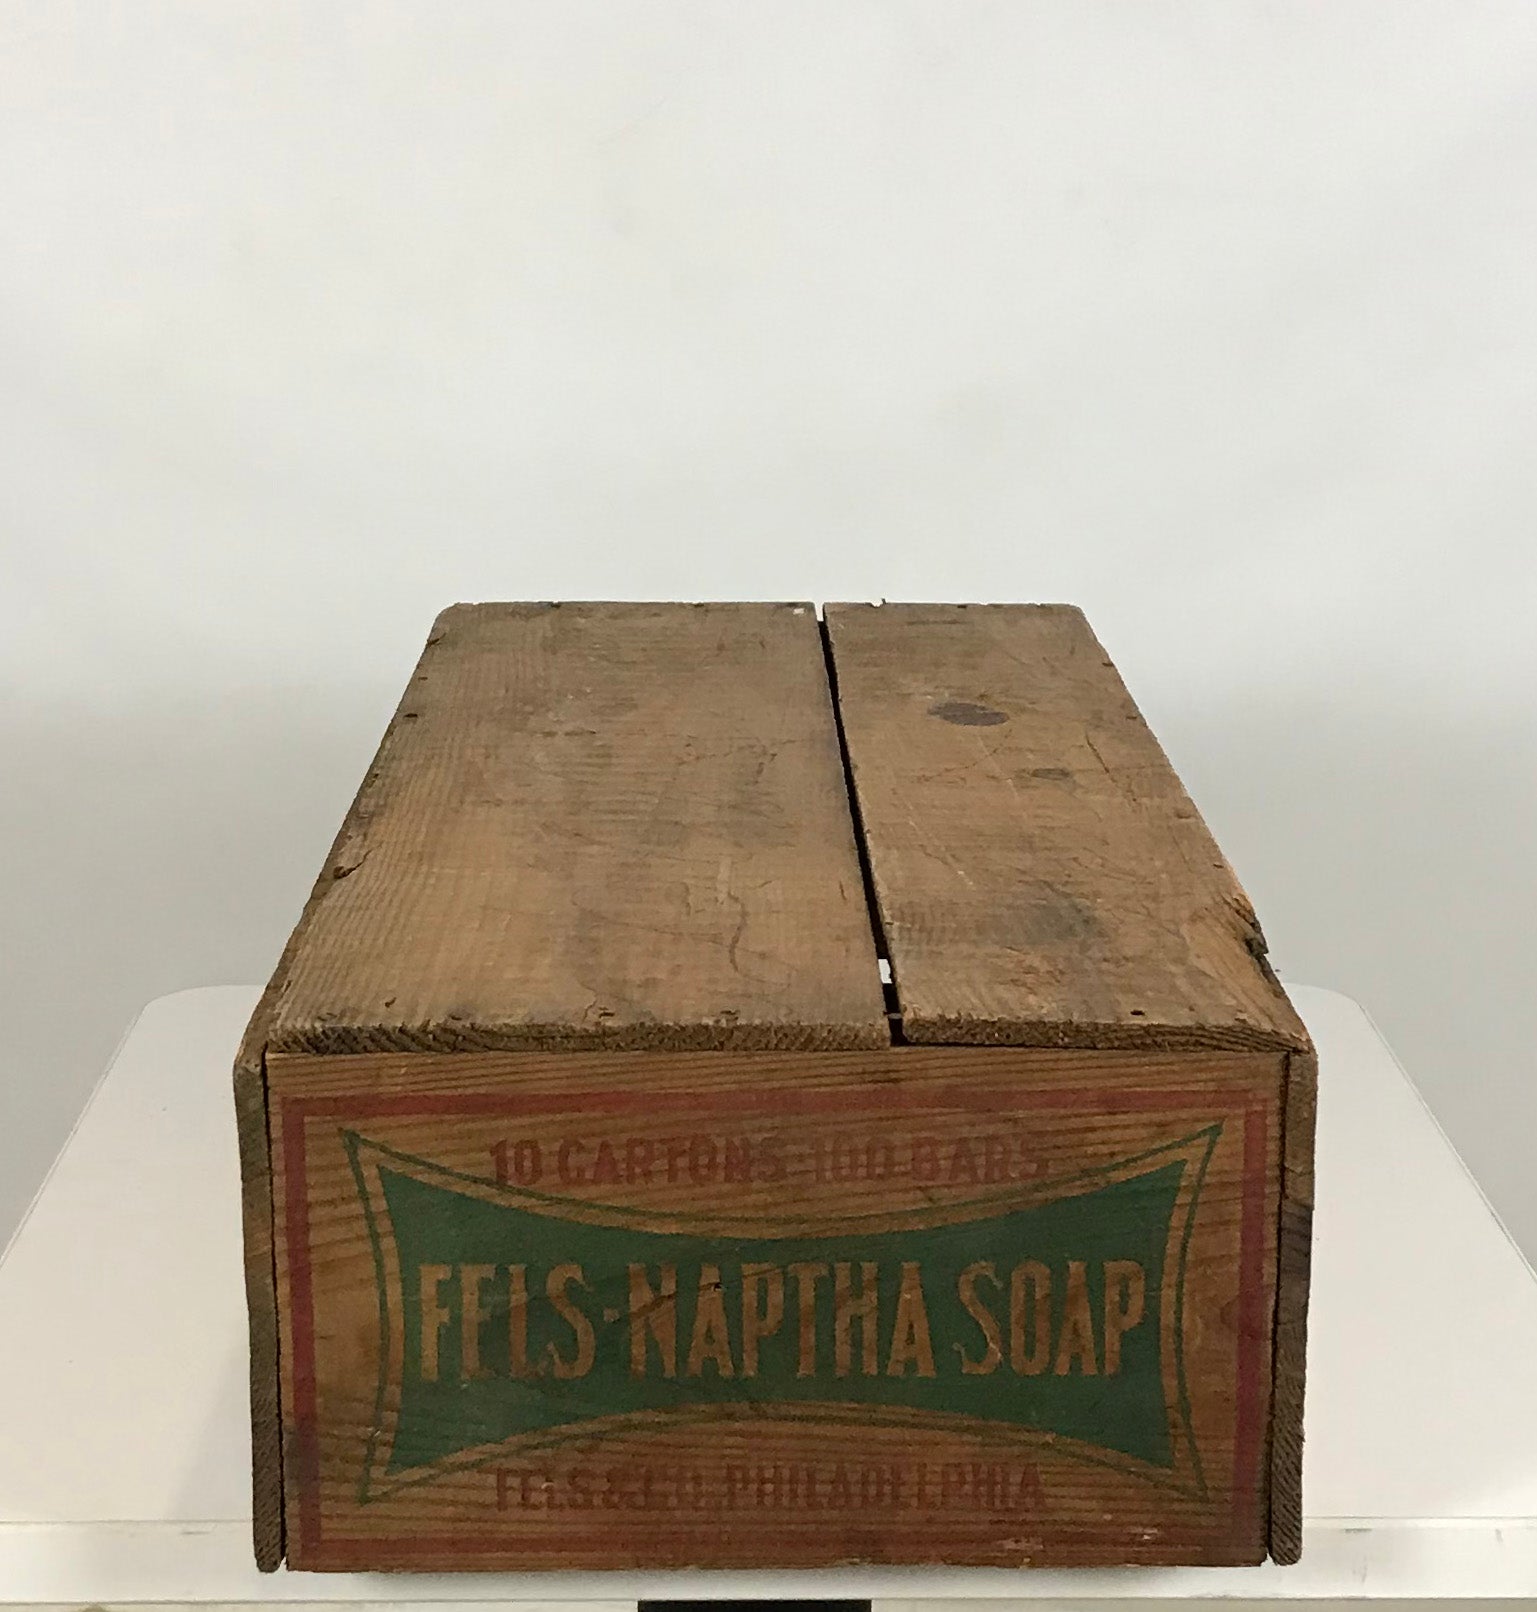 Fels-Naptha Soap Wooden Crate